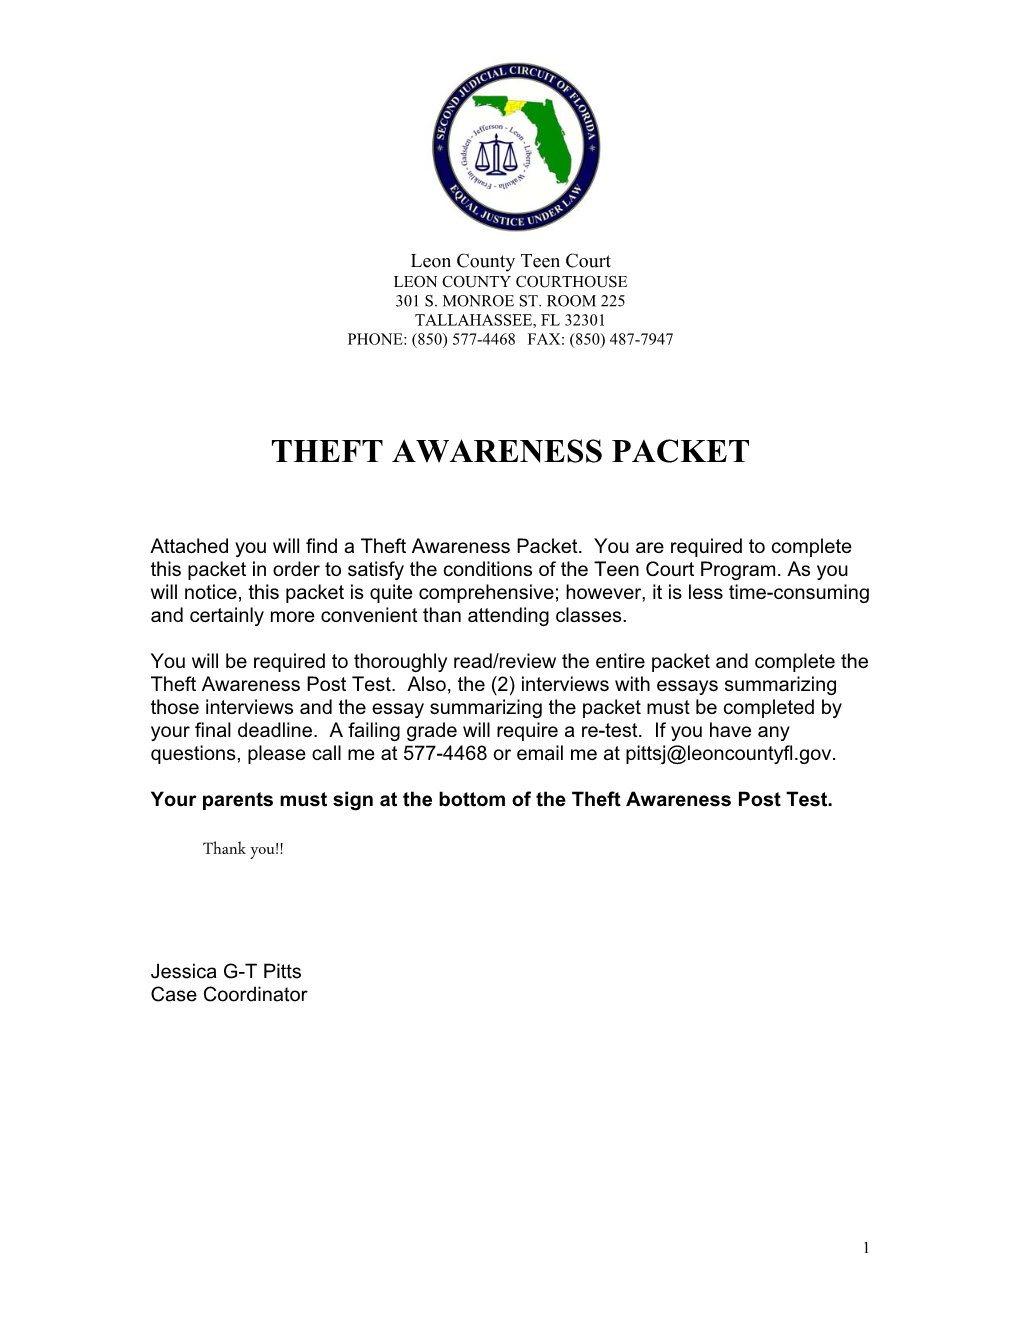 Theft Awareness Packet